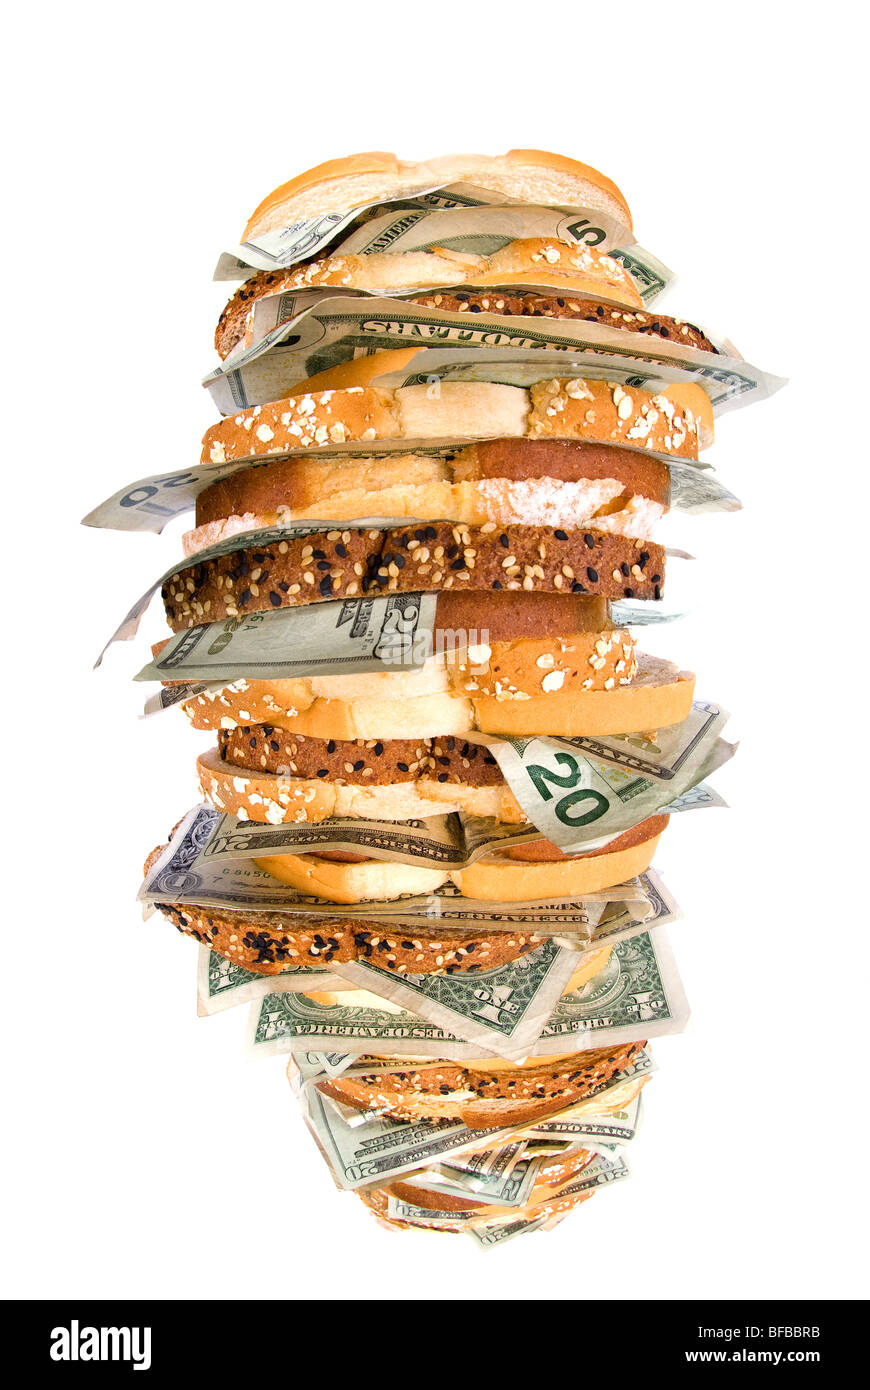 Un géant, de l'argent frais sandwich avec plusieurs types de pains et des confessions religieuses Banque D'Images